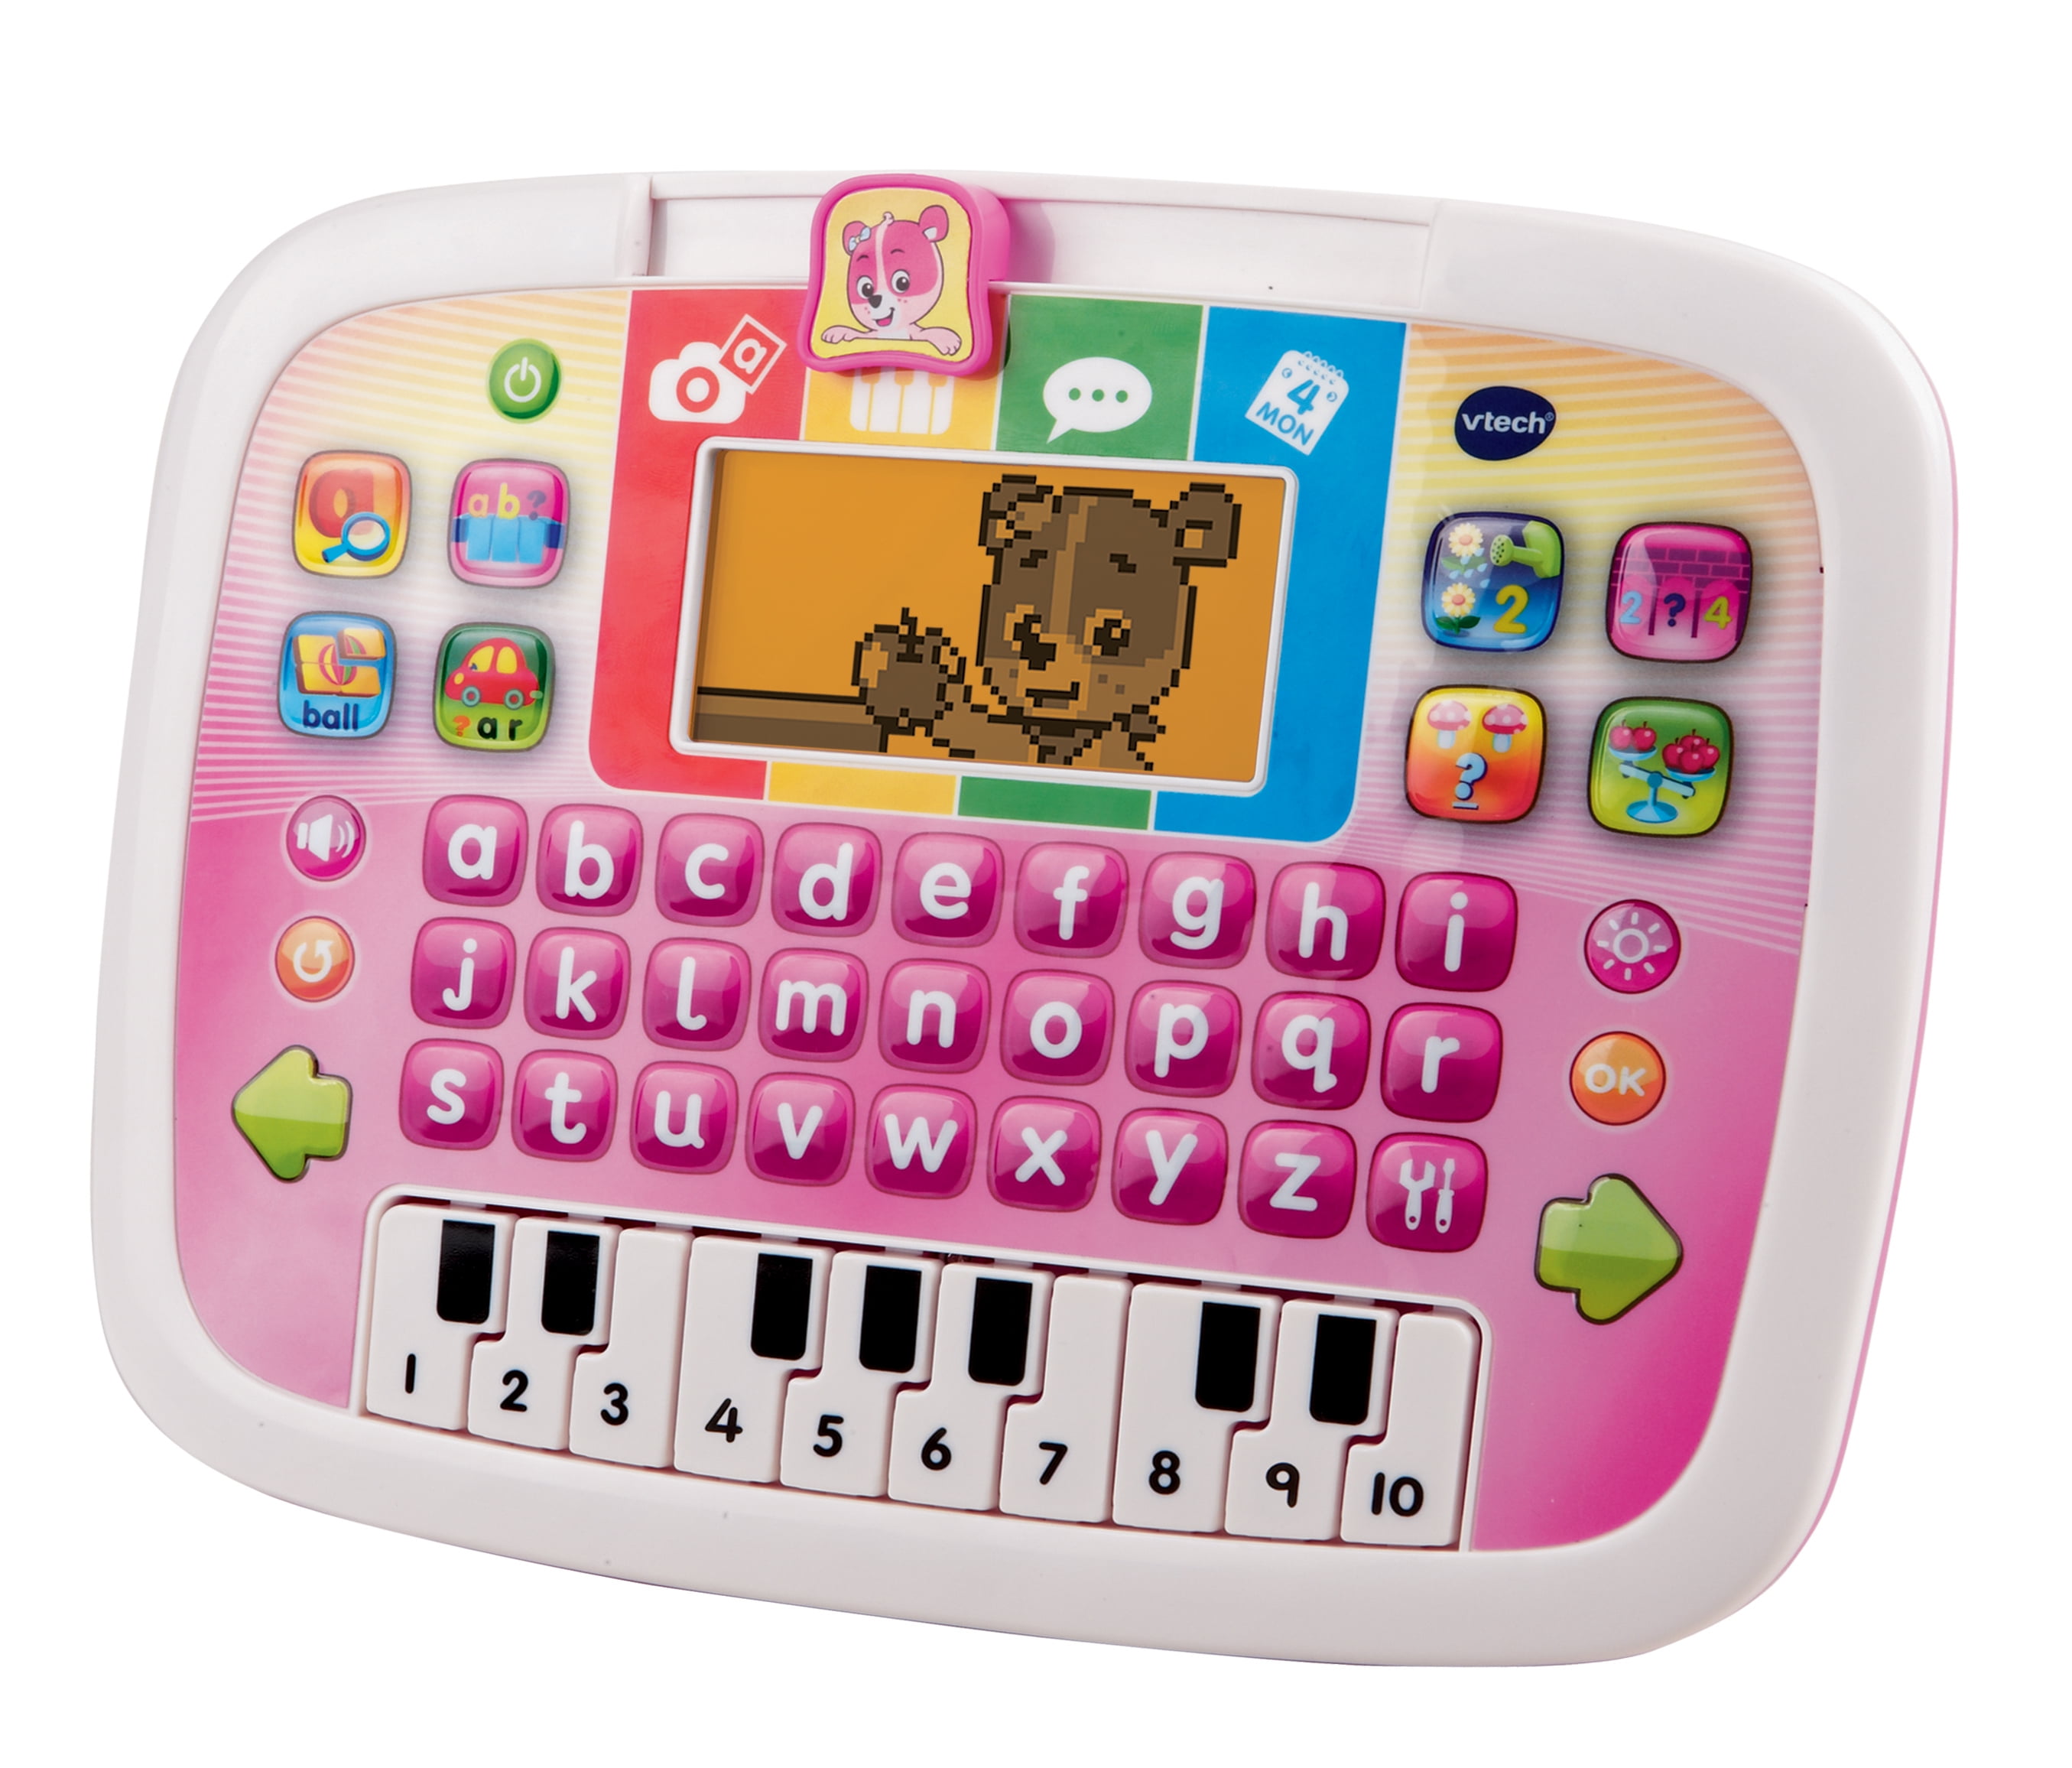 3480 – 155557 Tablet Educational for Children  Genius Little App Pink multicoloured VTech 